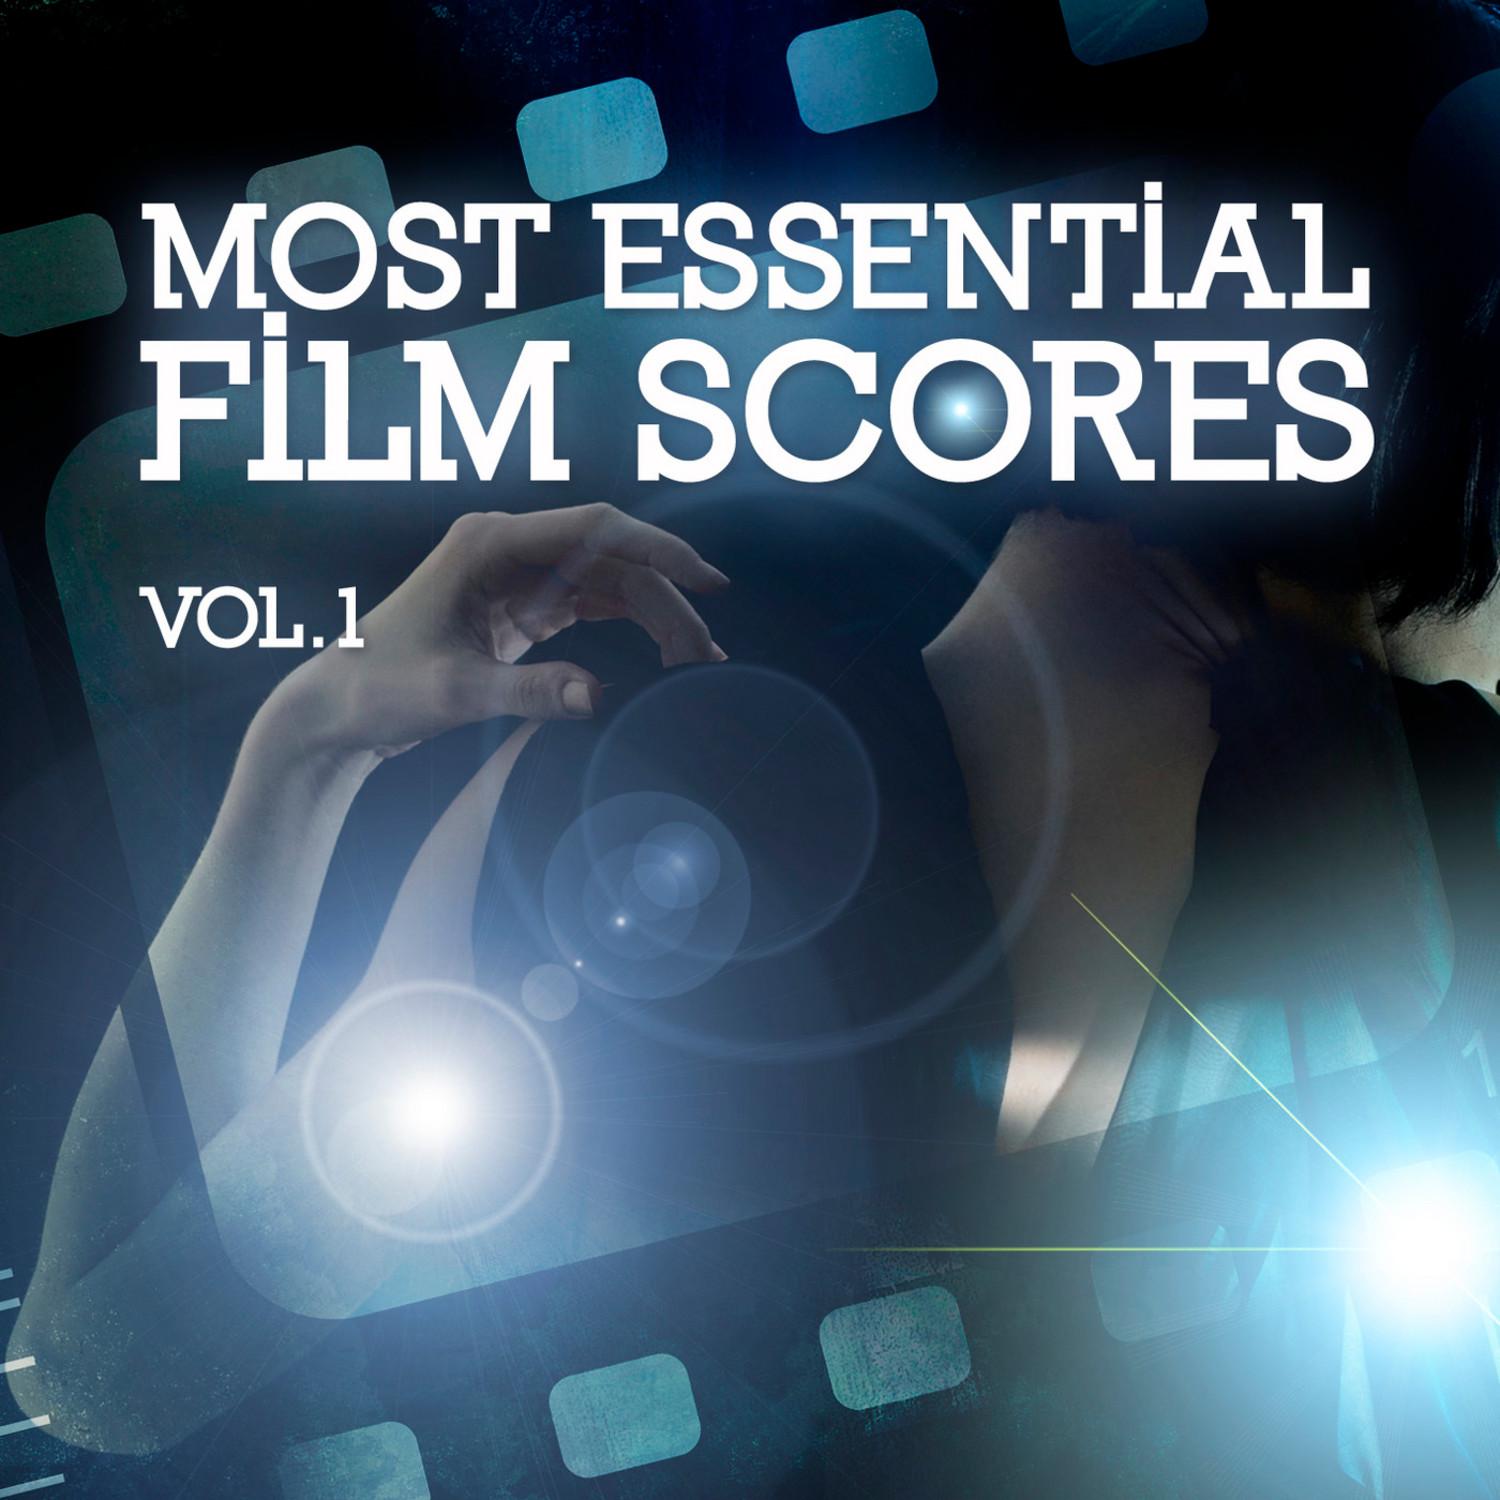 Most Essential Film Scores Vol. 1